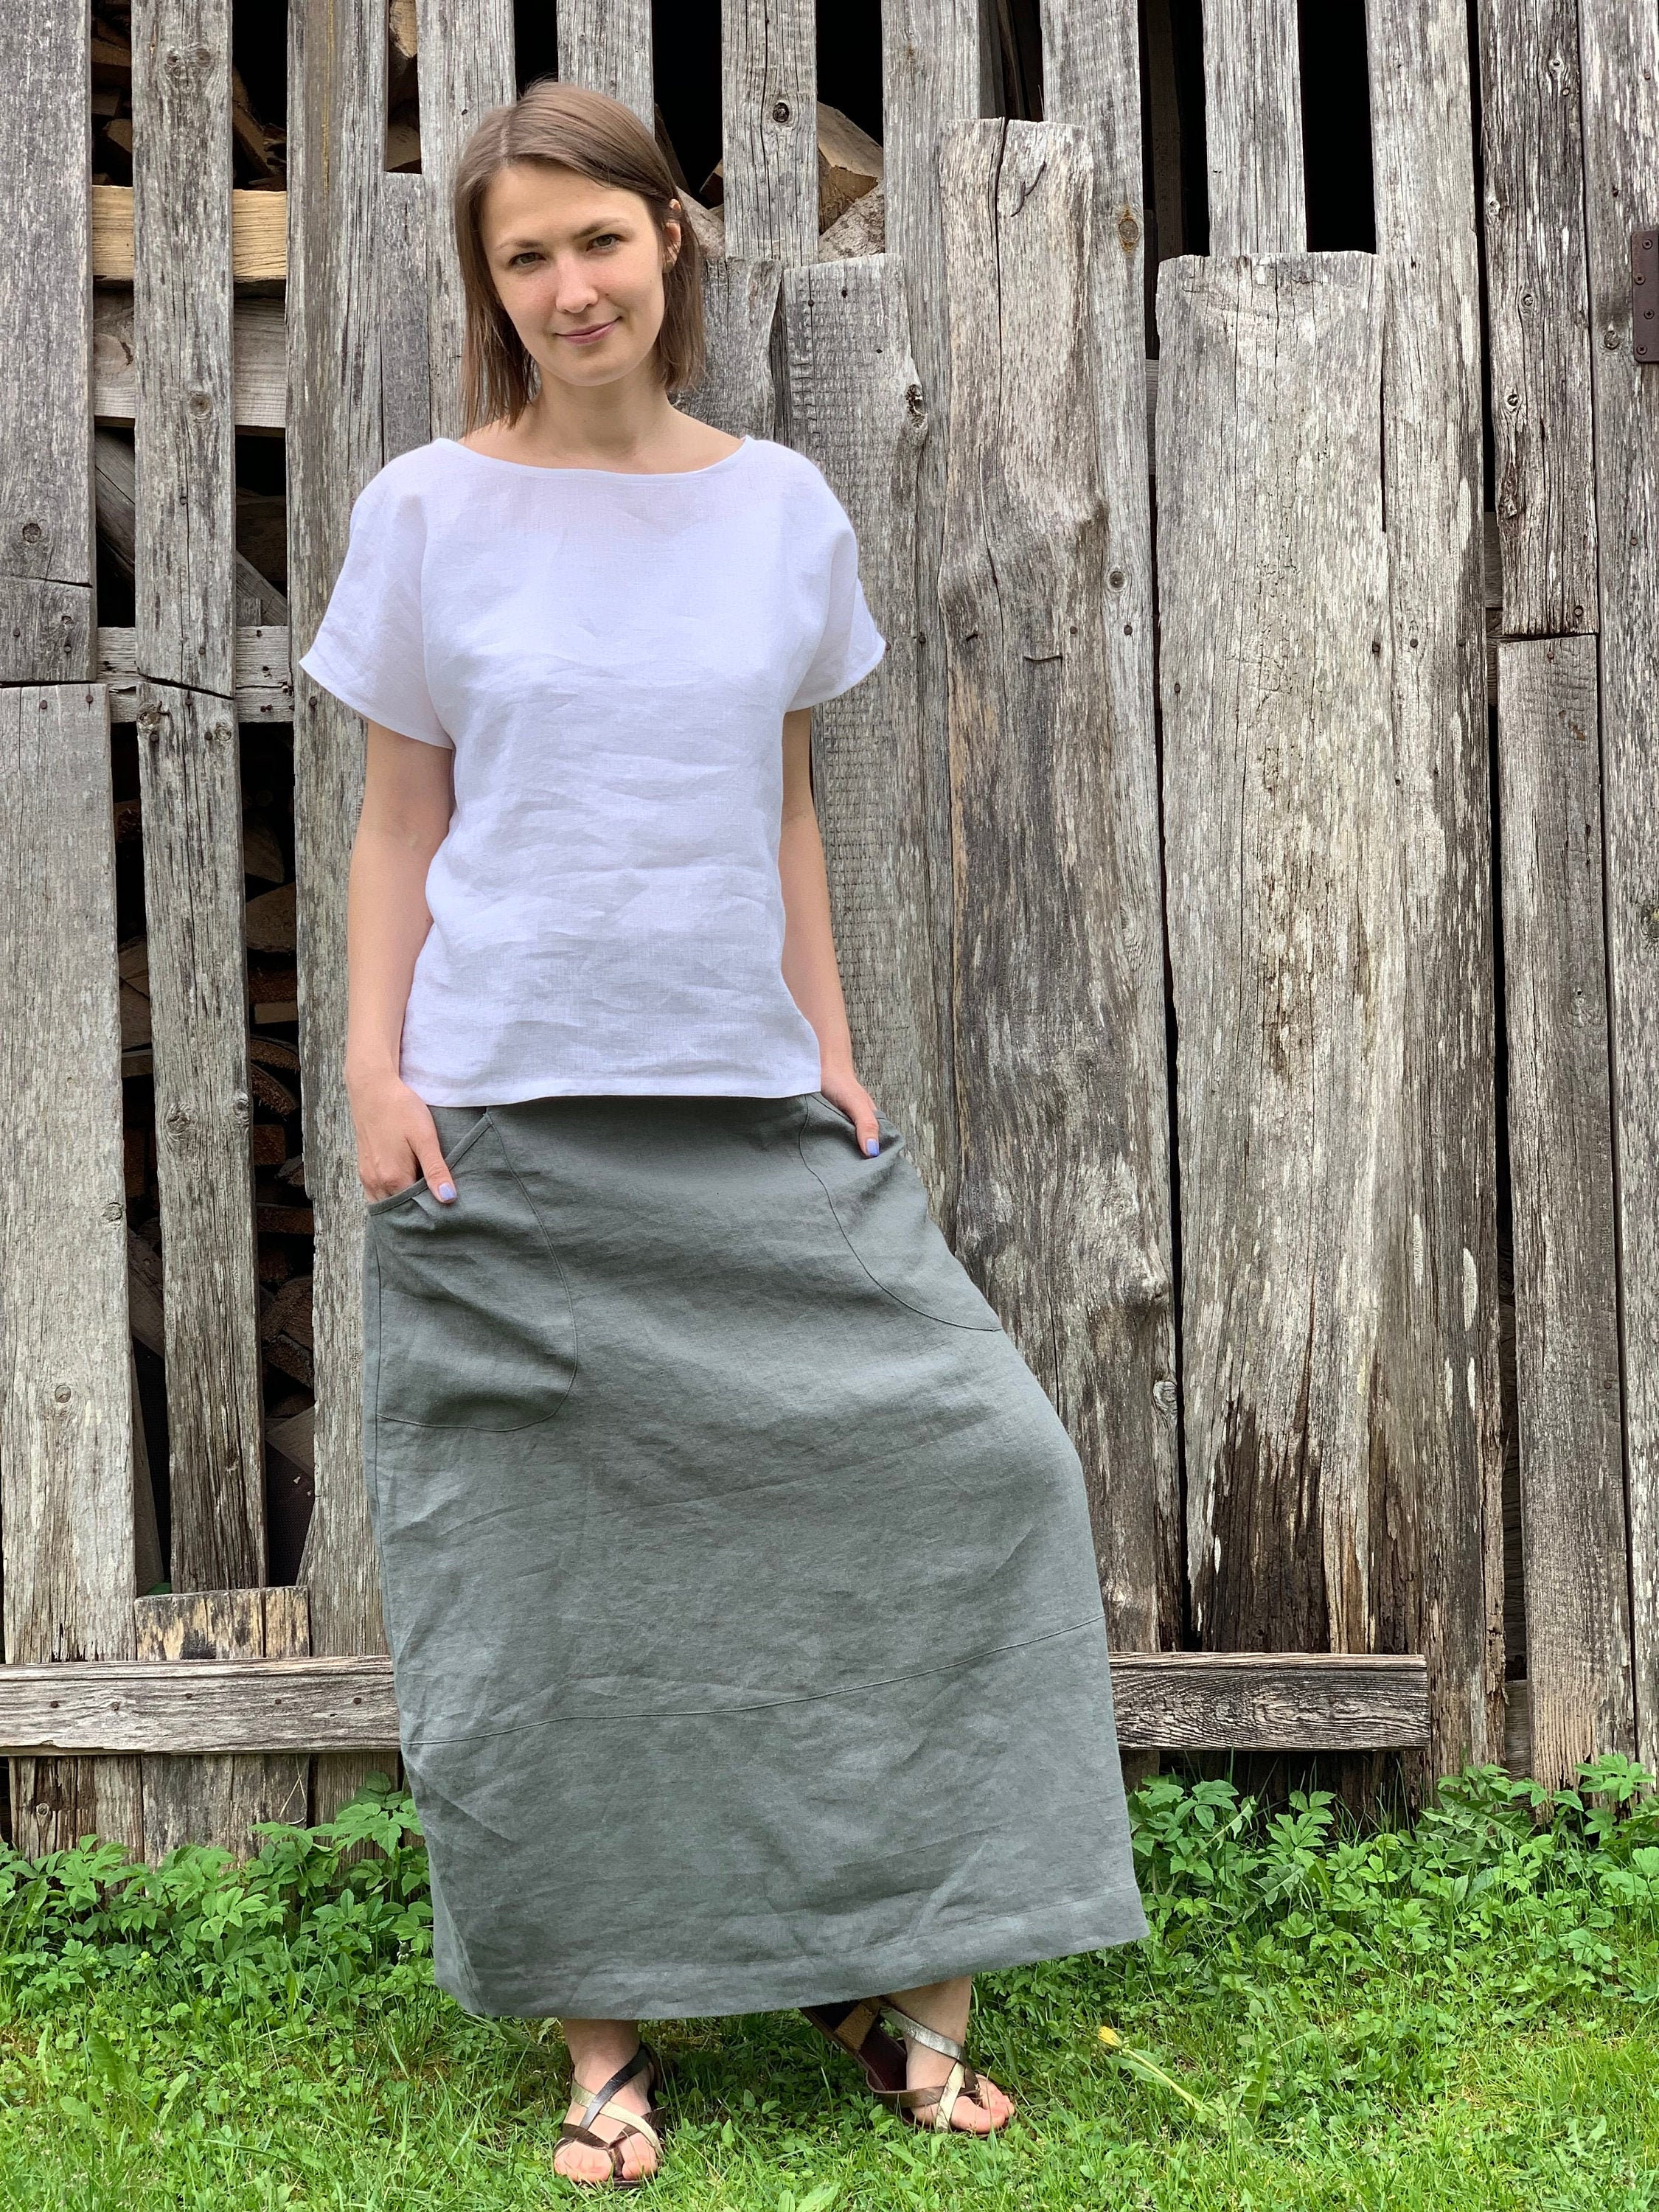 Easy DIY Maxi Skirt | How to Make a Linen Skirt - YouTube